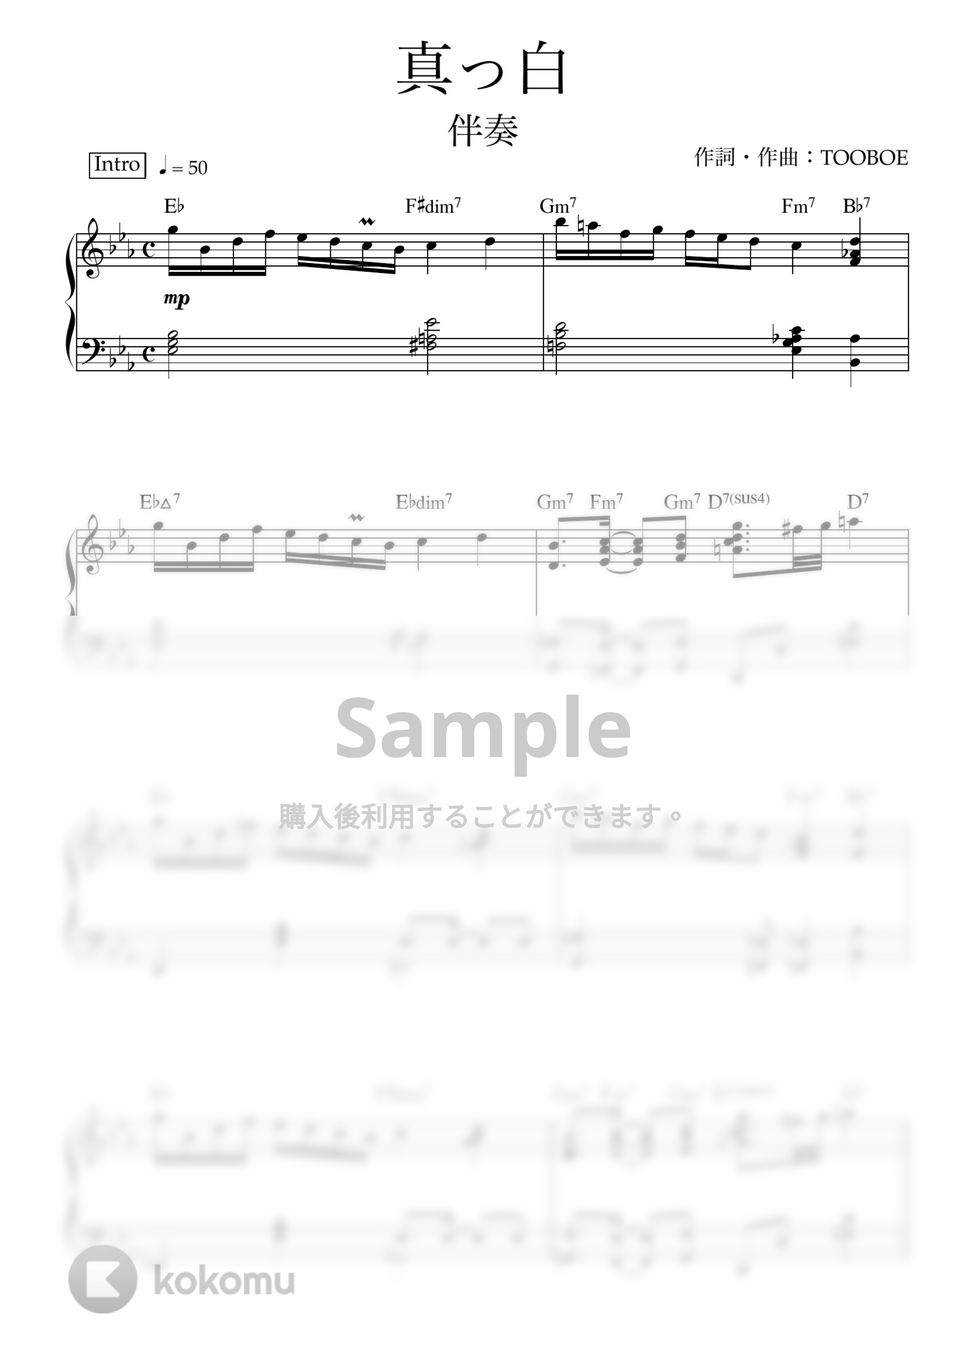 yama - 真っ白 (ピアノ伴奏) by ヒット